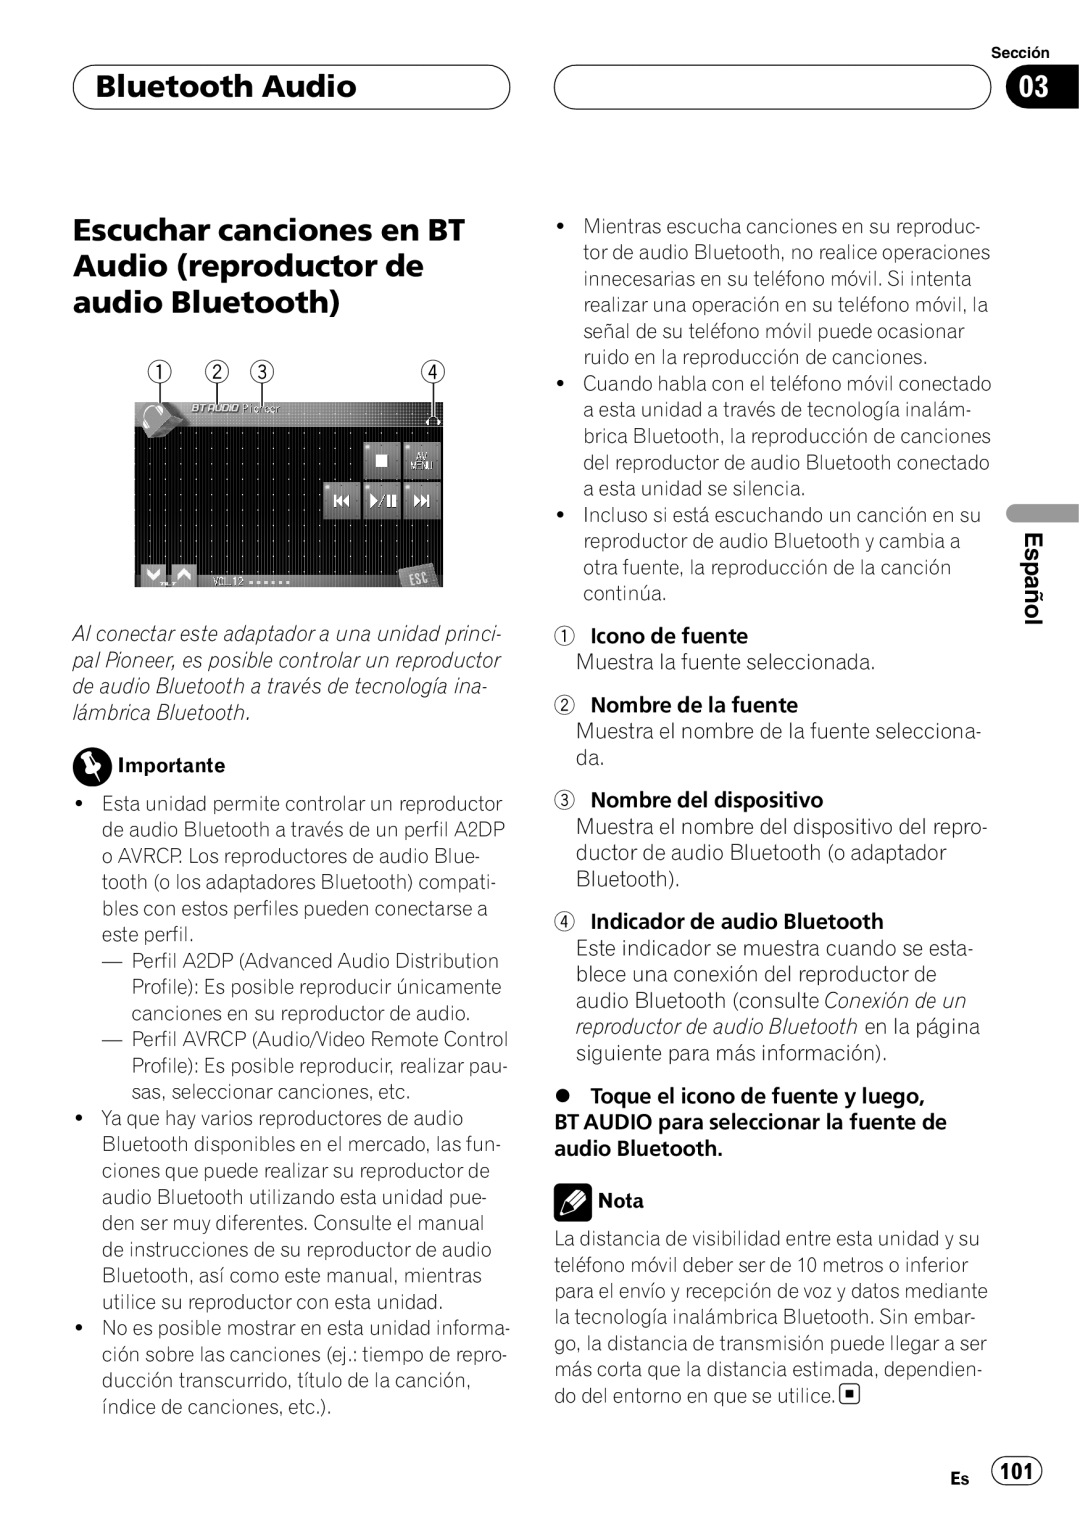 Pioneer CD-BTB200 owner manual Bluetooth Audio, Escuchar canciones en BT Audio reproductor de audio Bluetooth, Español 